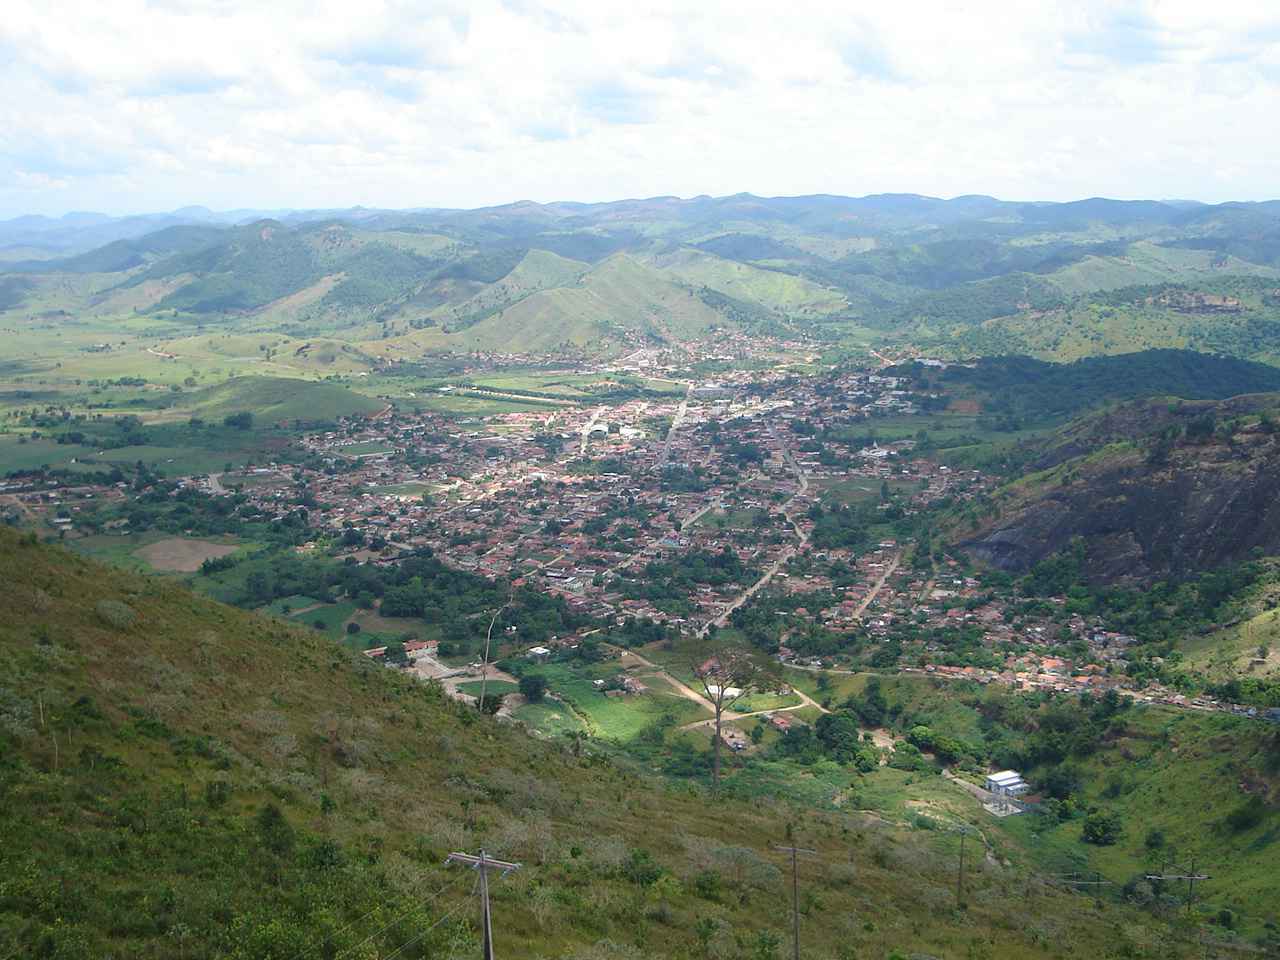 Vista de Itambacuri, cidade mineira do Vale do Rio Doce